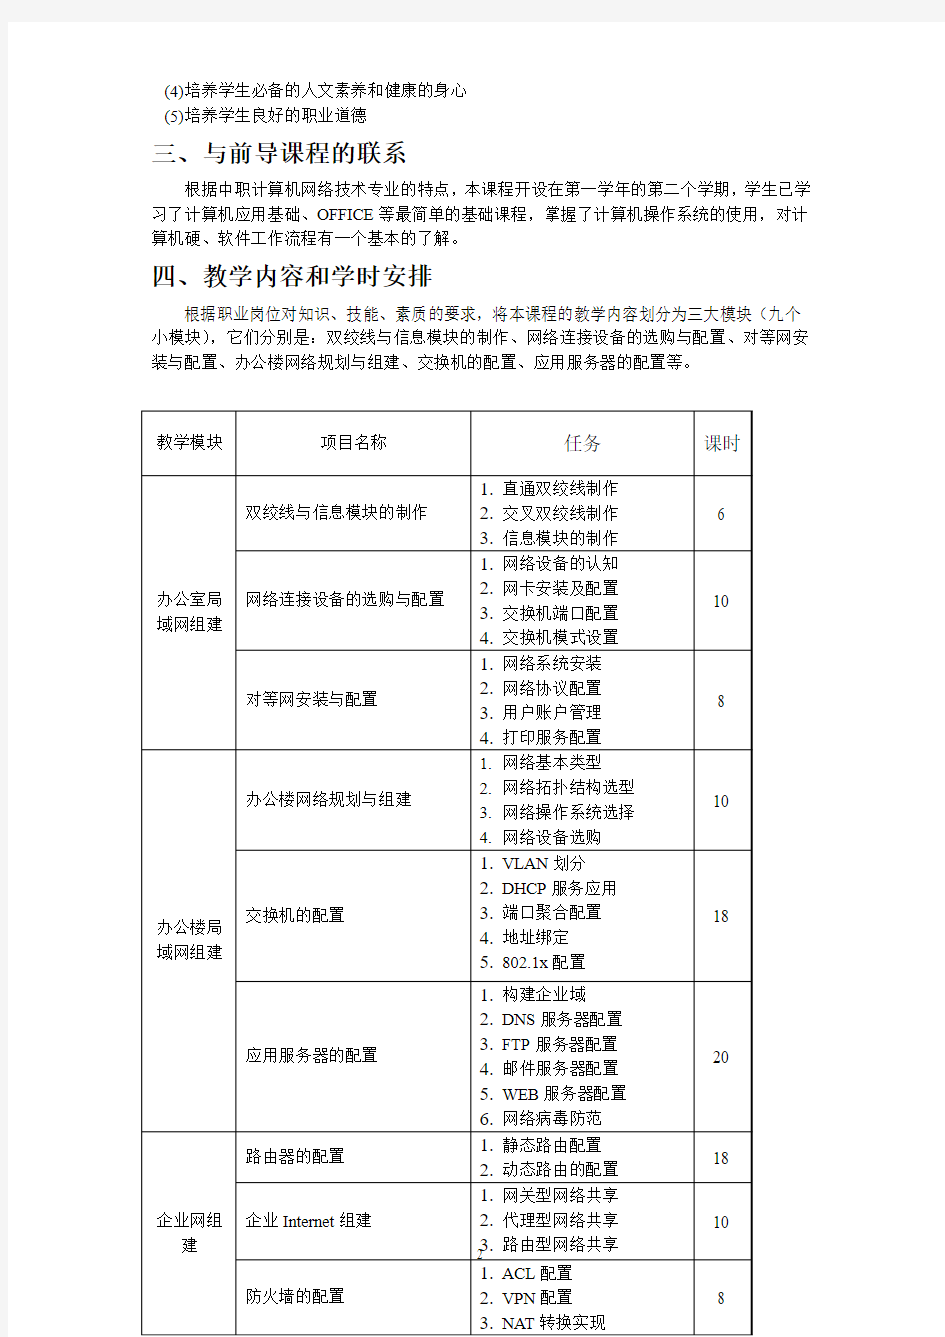 李耀伟——局域网组建与管理课程标准